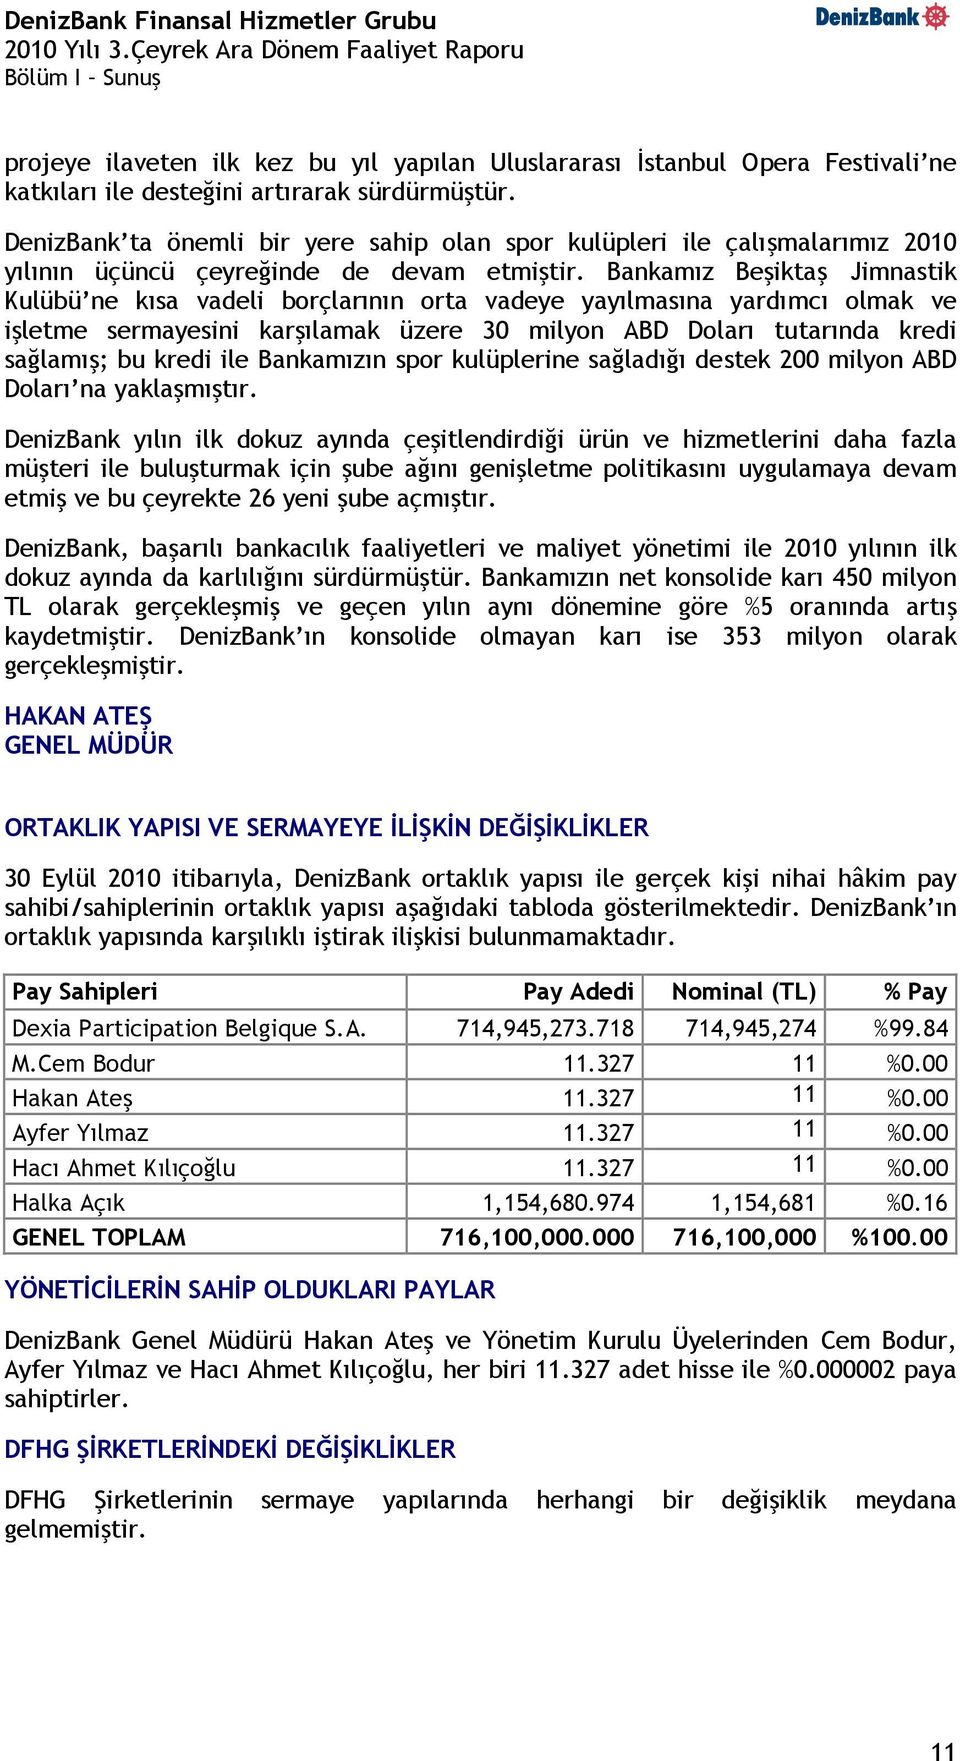 Bankamız Beşiktaş Jimnastik Kulübü ne kısa vadeli borçlarının orta vadeye yayılmasına yardımcı olmak ve işletme sermayesini karşılamak üzere 30 milyon ABD Doları tutarında kredi sağlamış; bu kredi